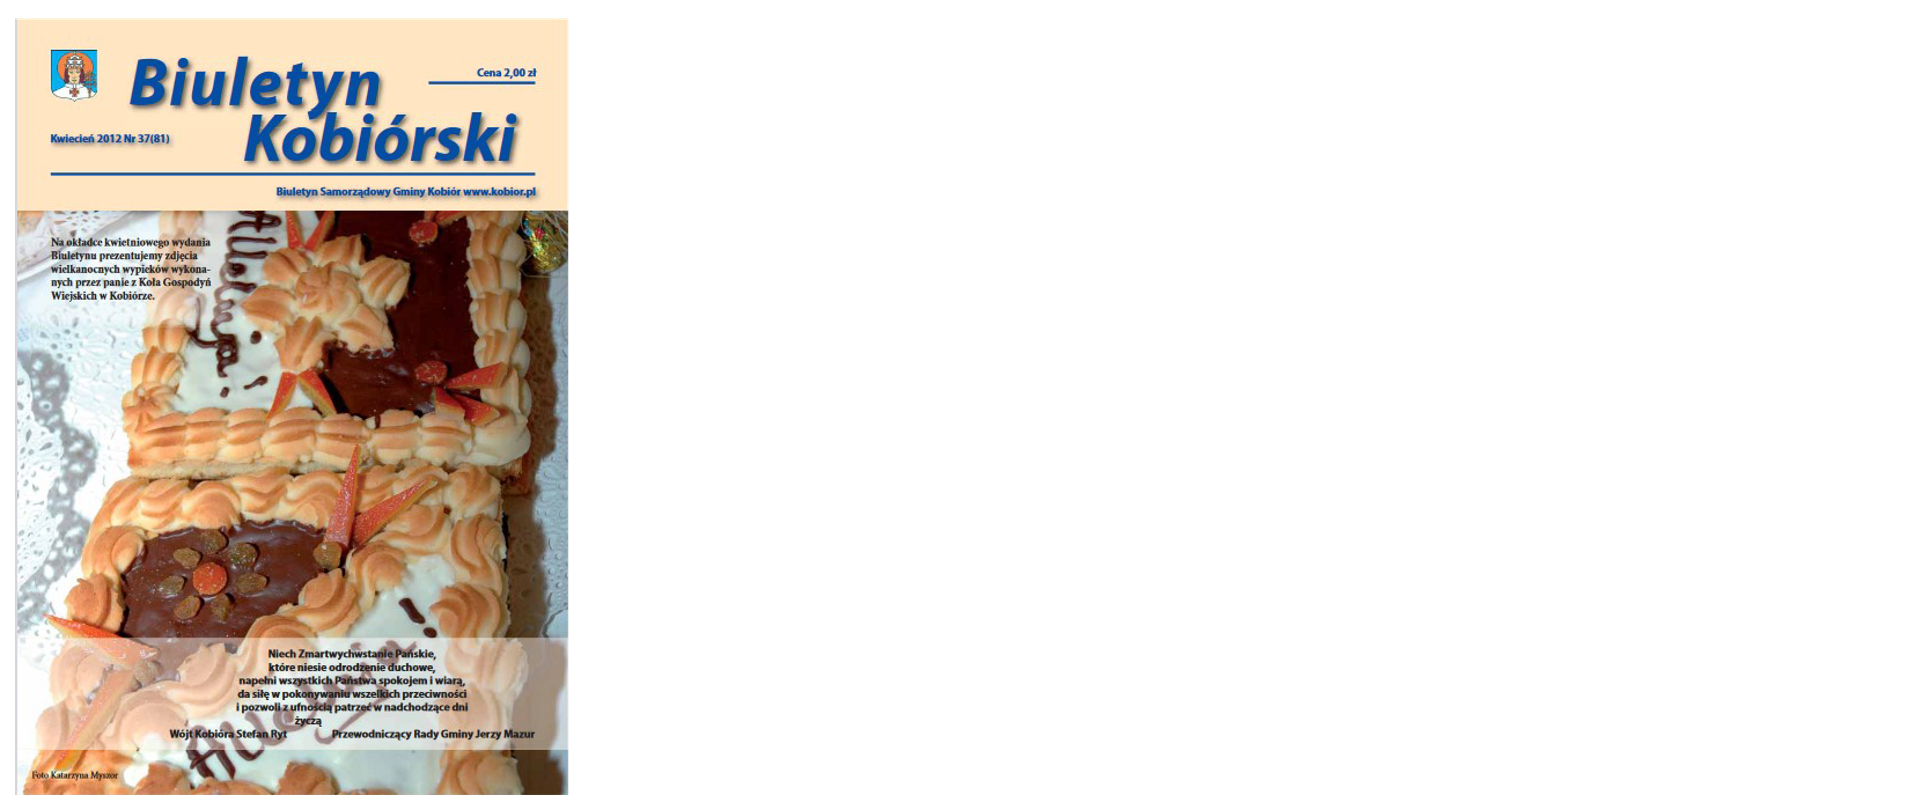 Zdjęcie przedstawia okładkę biuletynu kobiórskiego z kwietnia 2012 roku na której widać wielkanocne wypieki